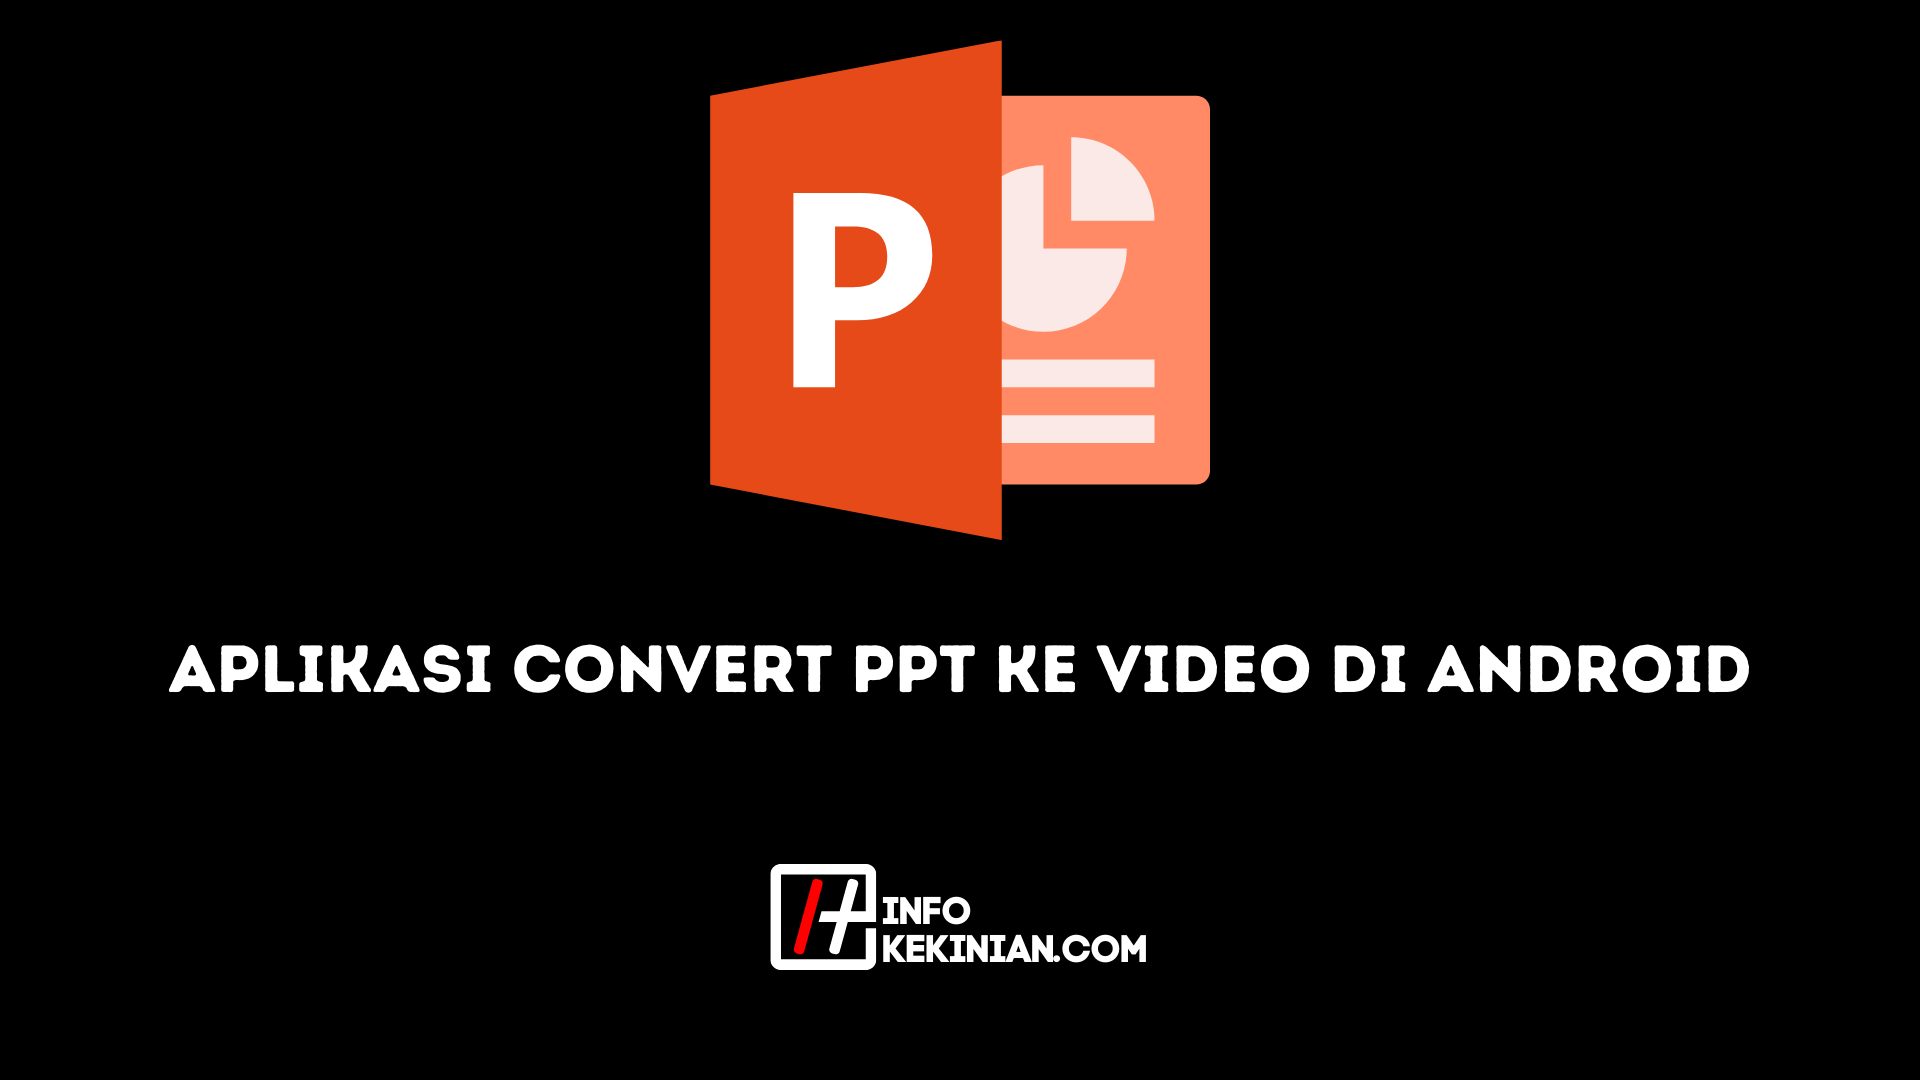 Aplikasi Convert PPT ke Video di Android